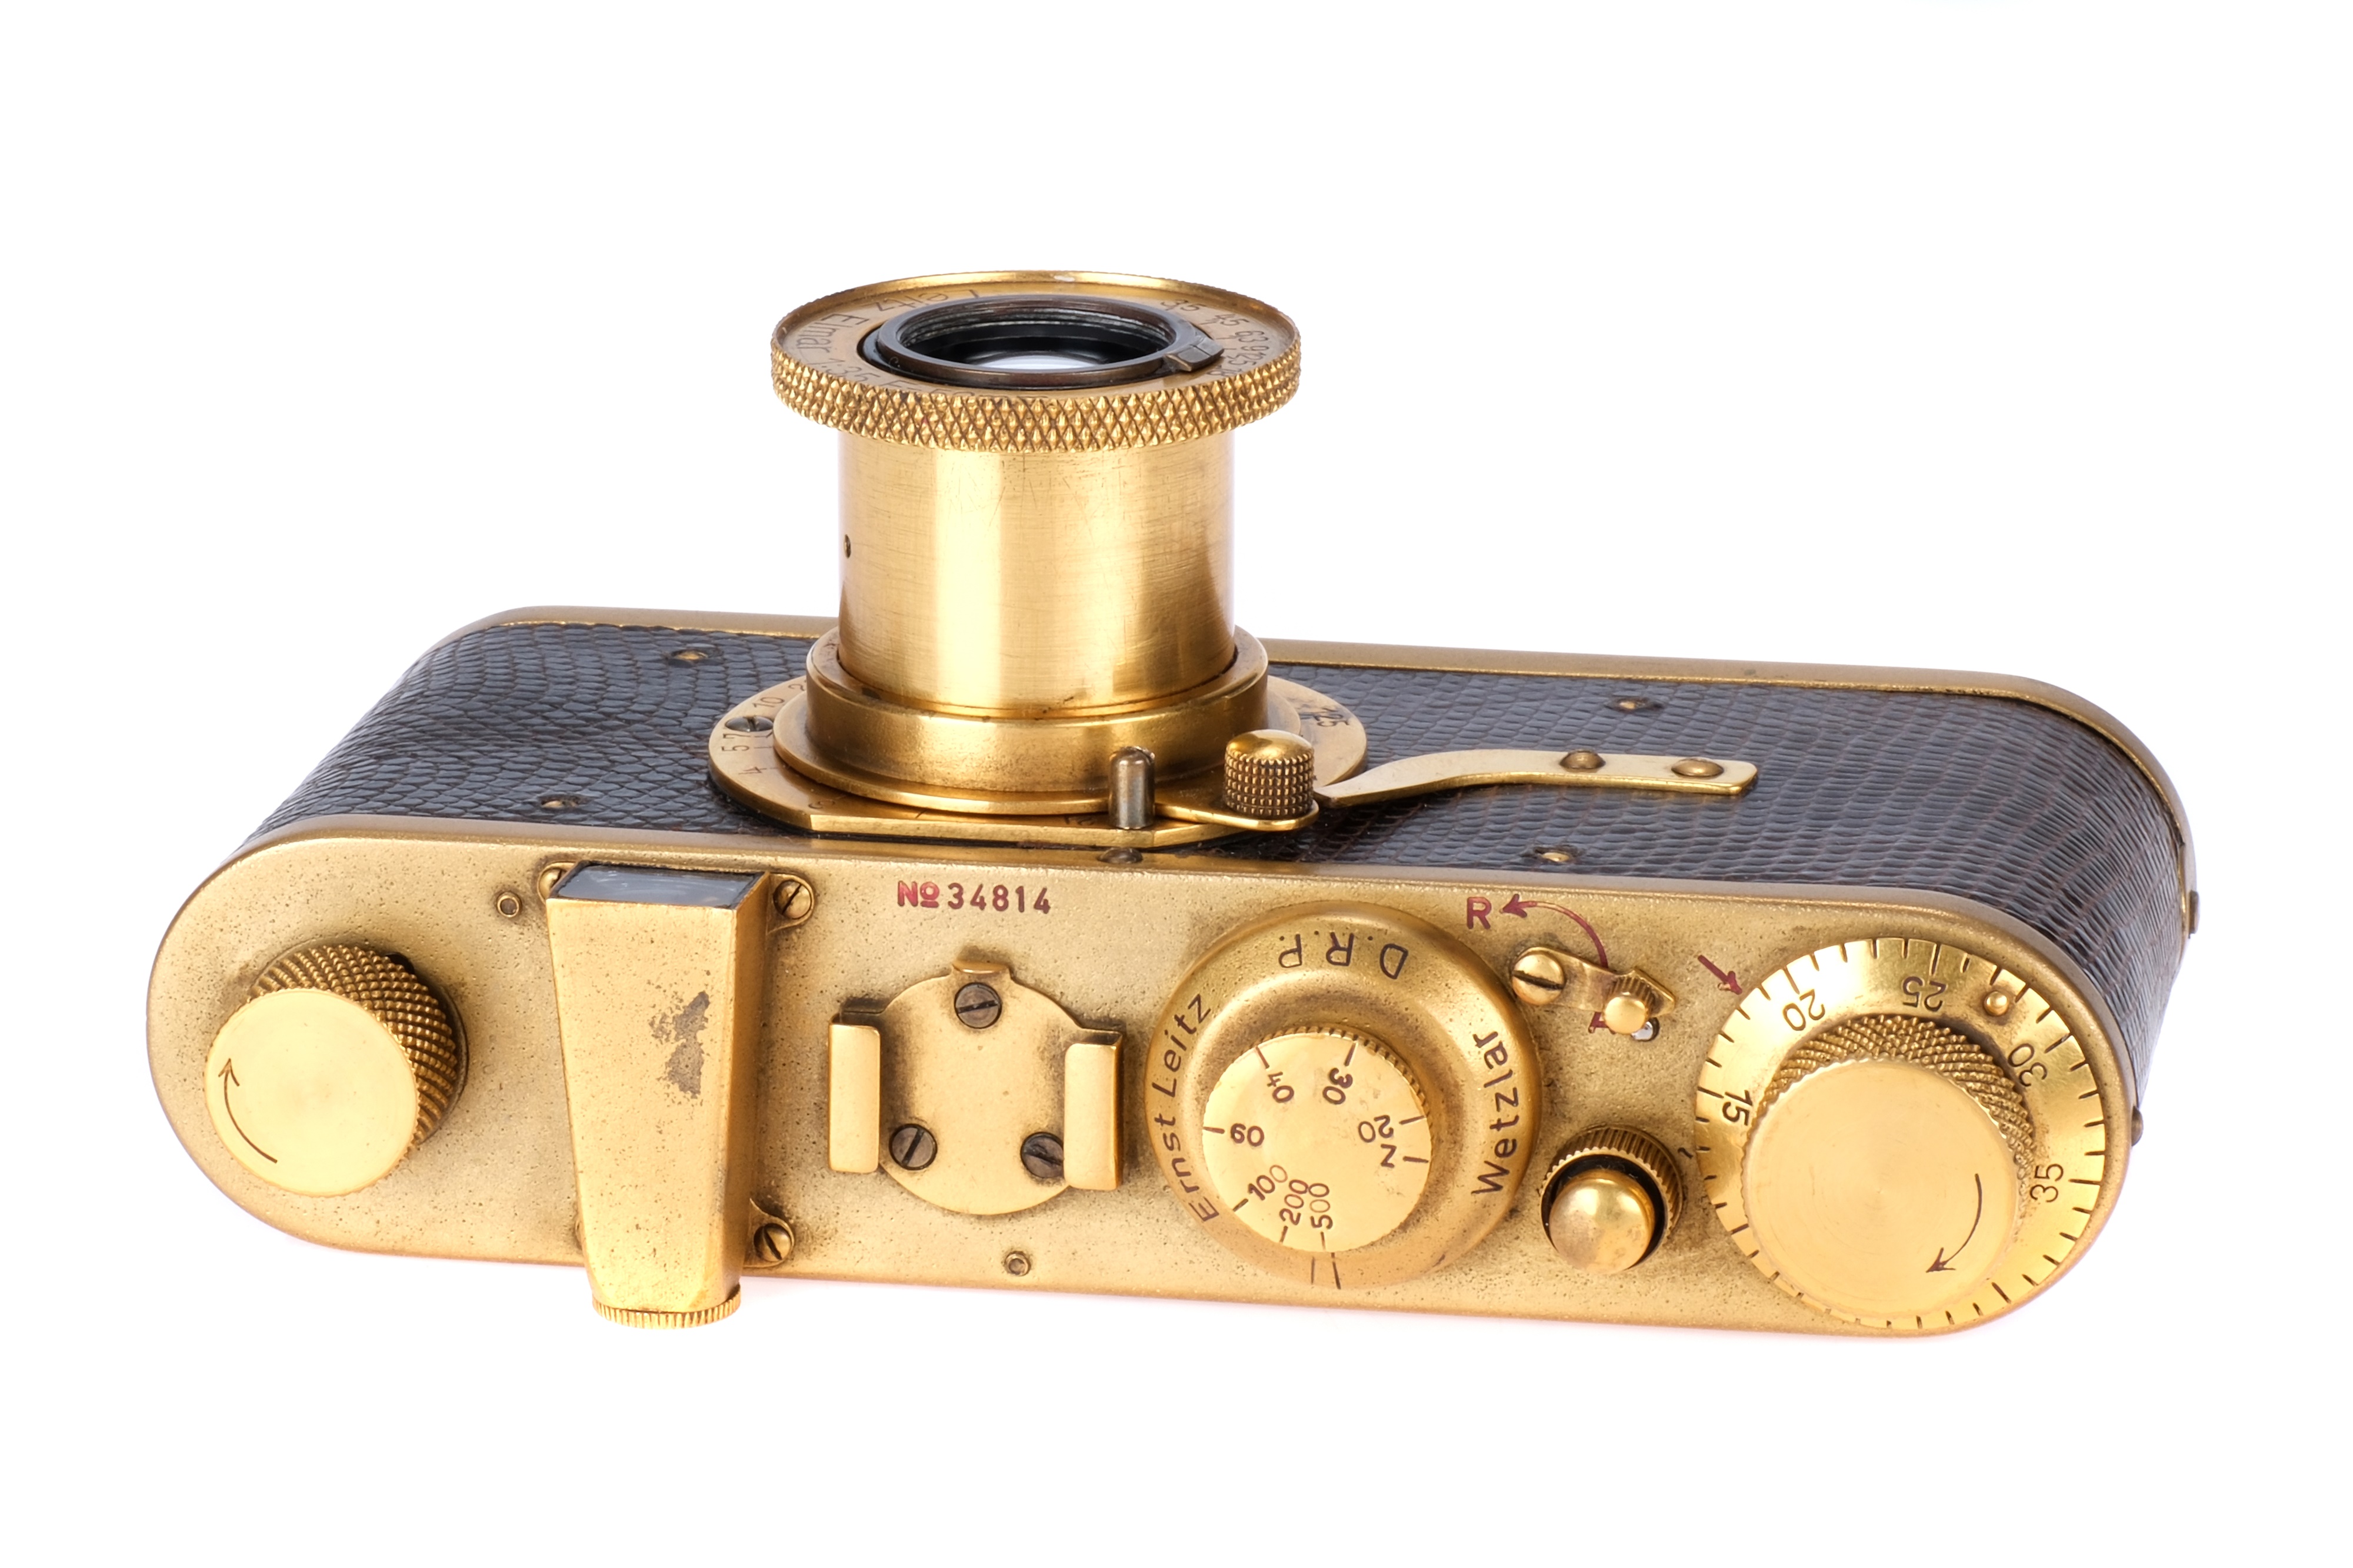 A Leica I Model A 'Luxus' Replica Camera, - Image 2 of 4